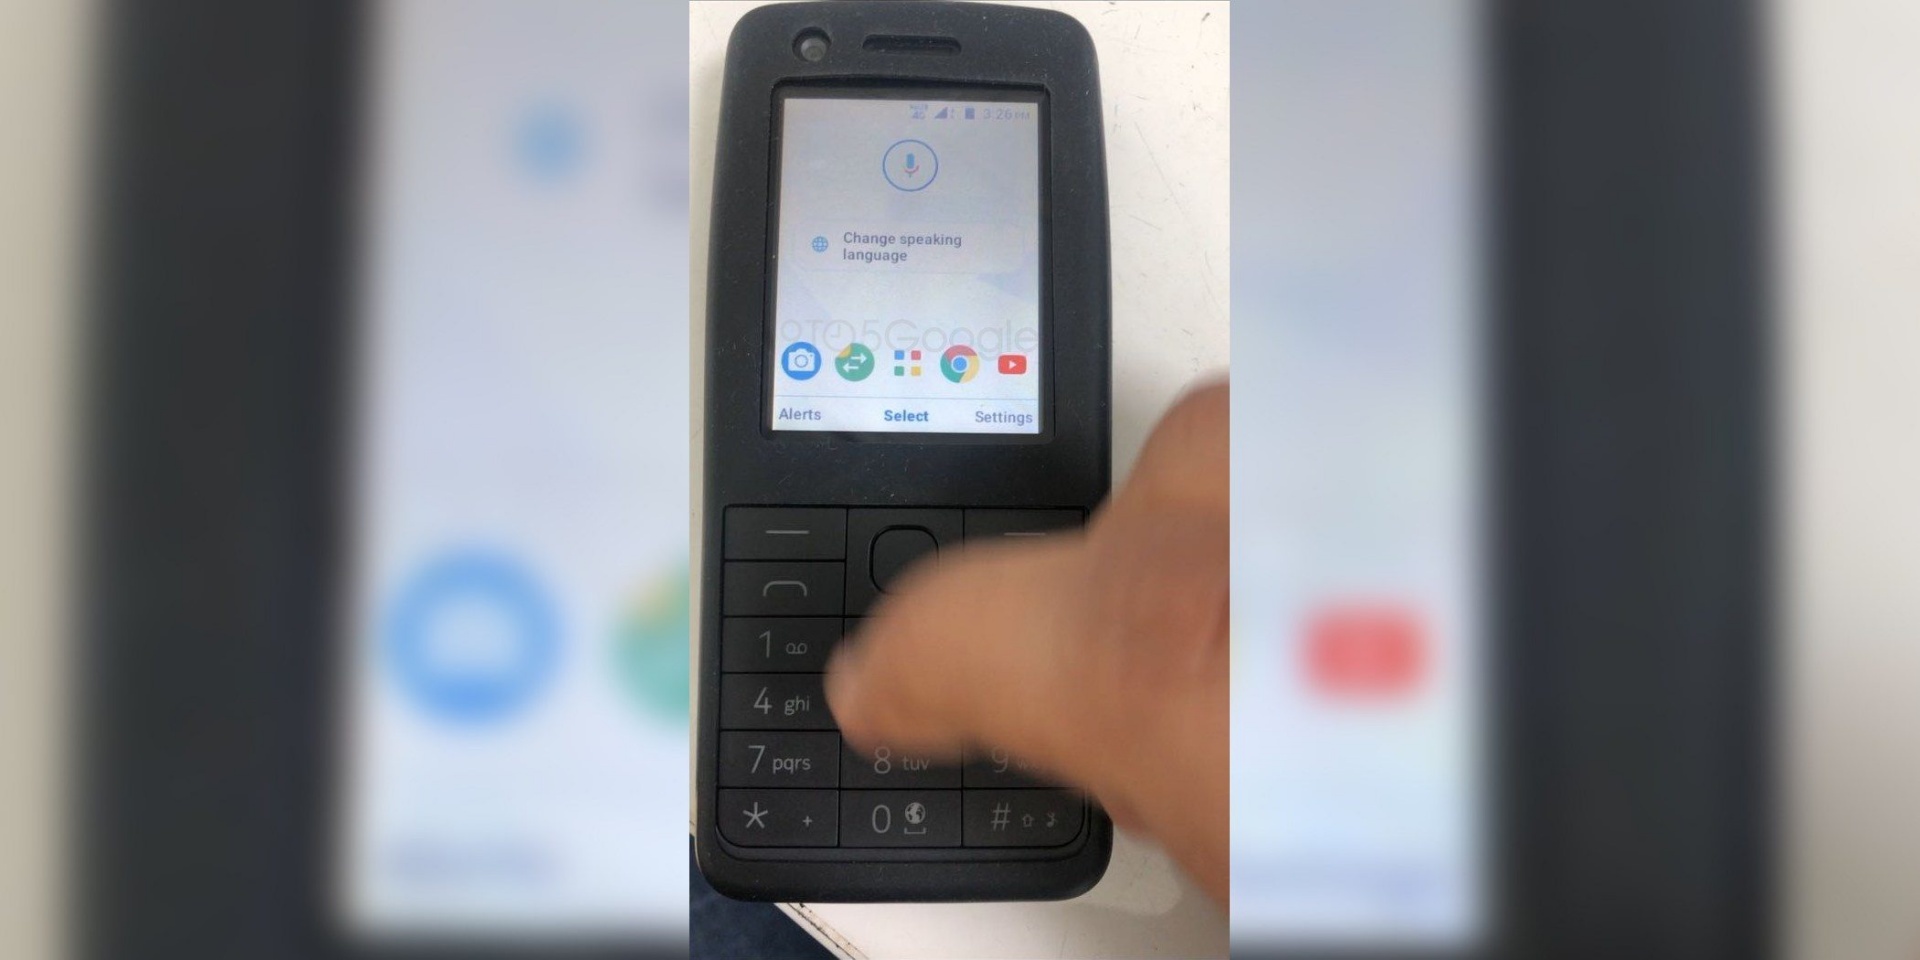 Опубликовано видео, демонстрирующее работу кнопочного телефона с Android